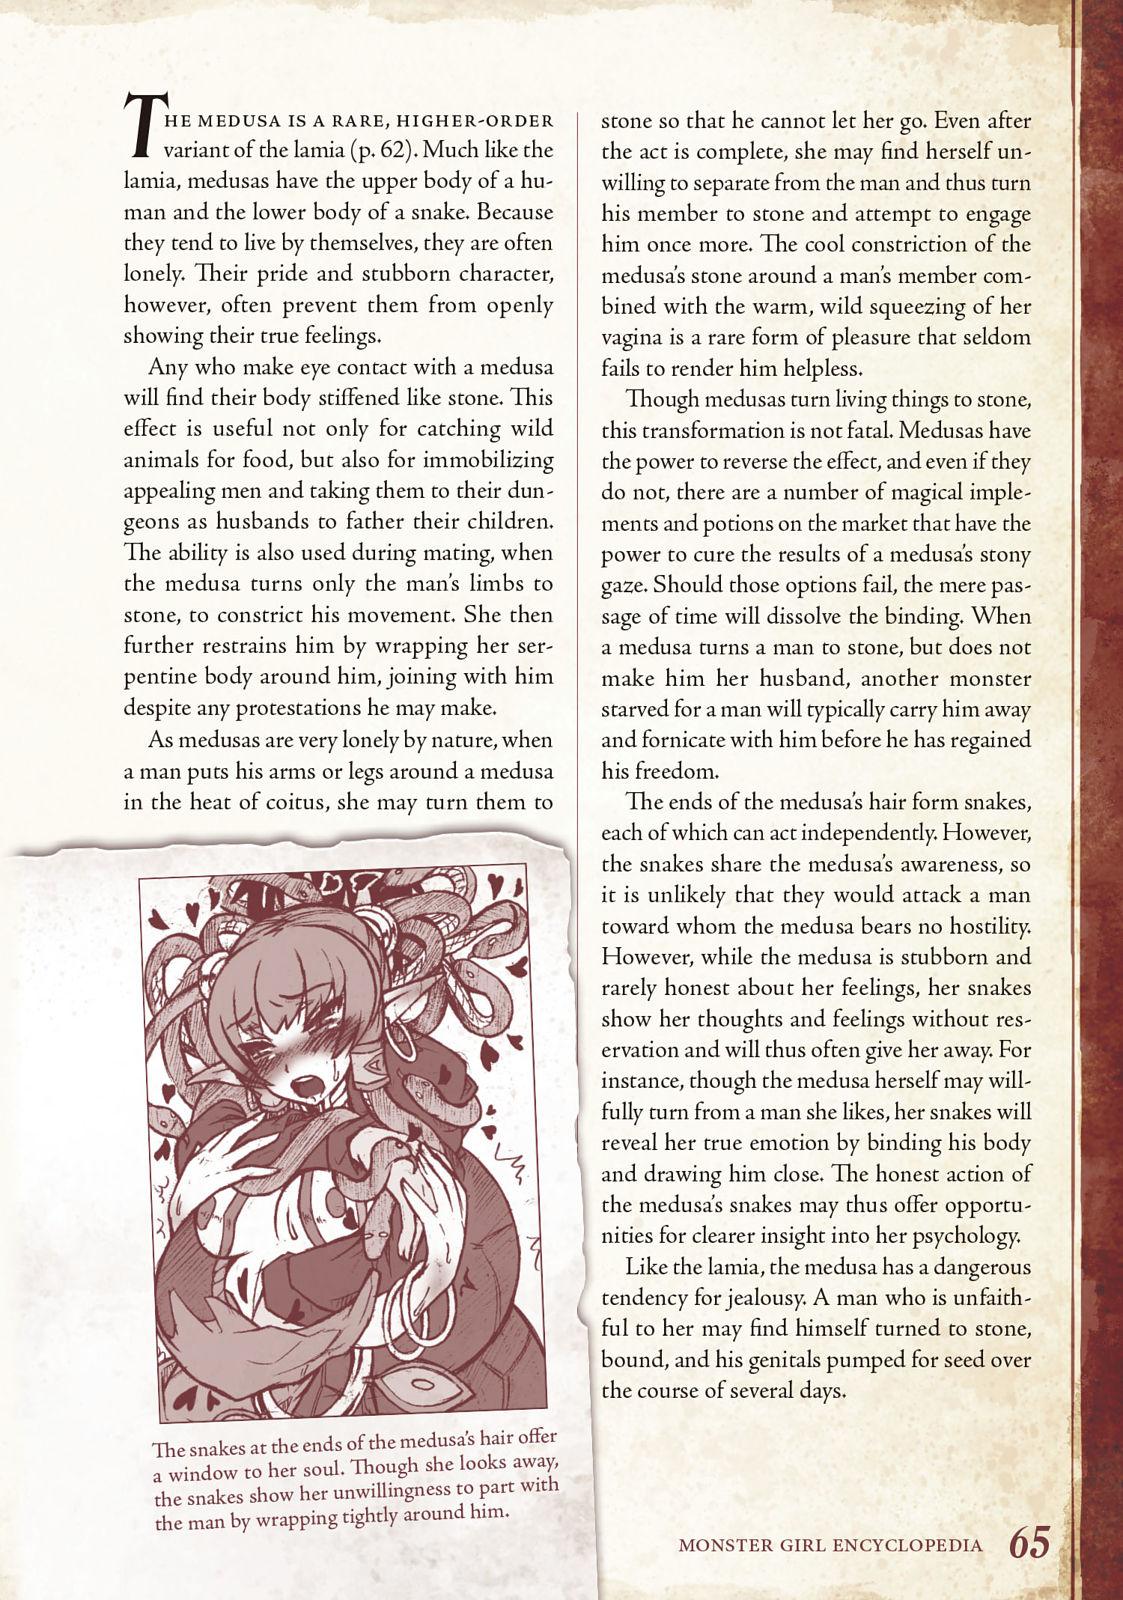 Monster Girl Encyclopedia Vol. 1 65